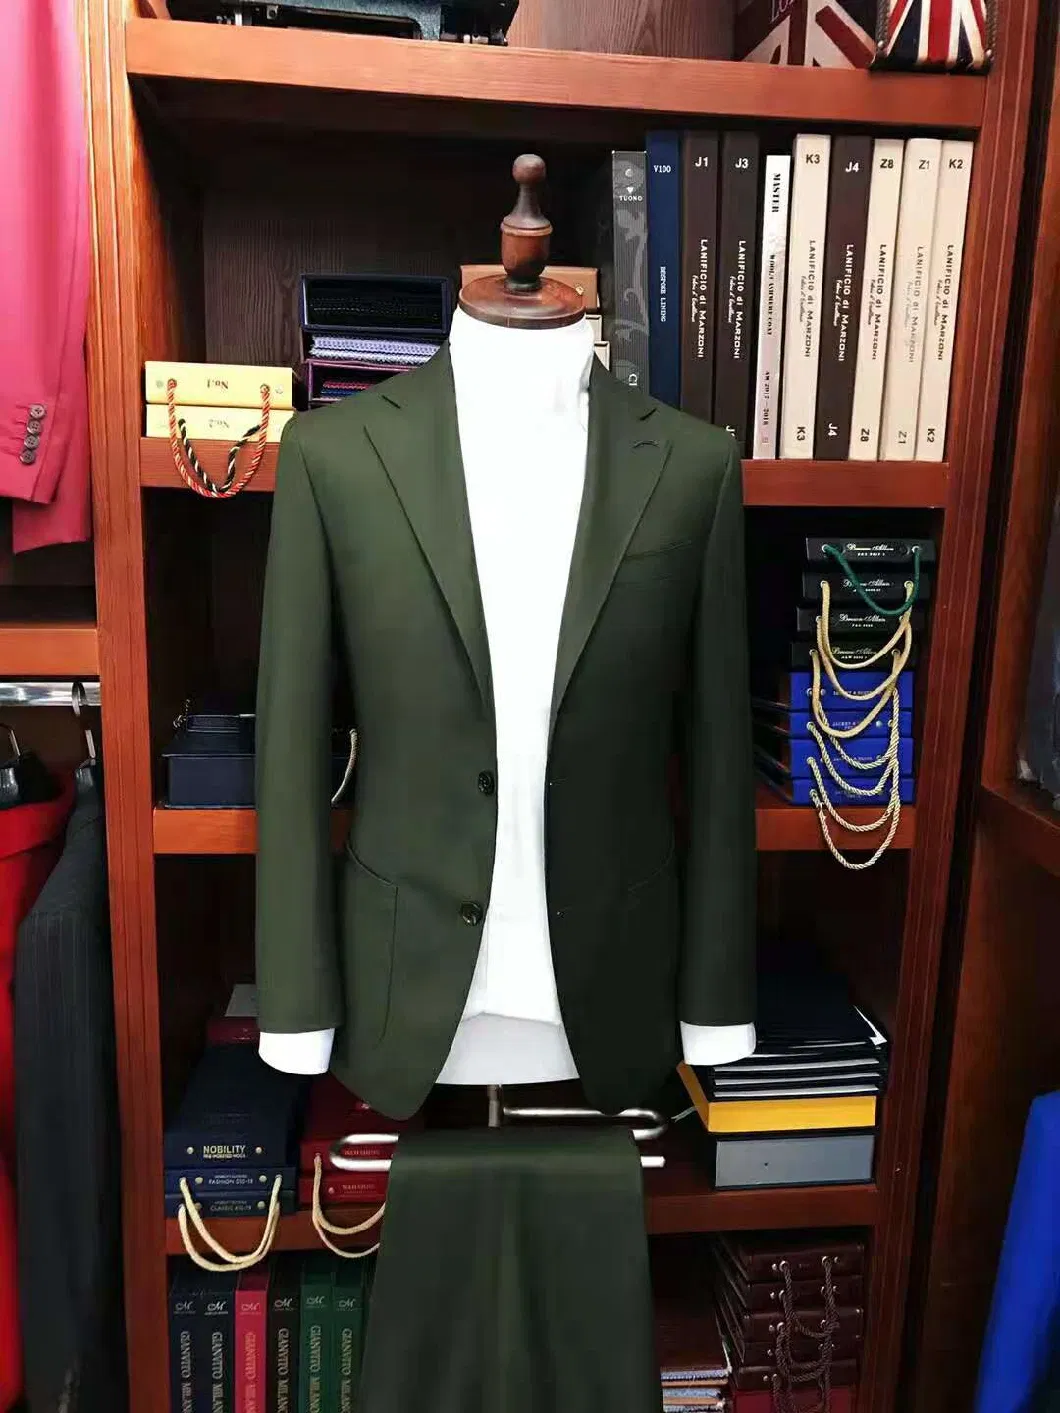 Mtm Men Suits Wedding Suit Elegent Apparel Jacket Blazer